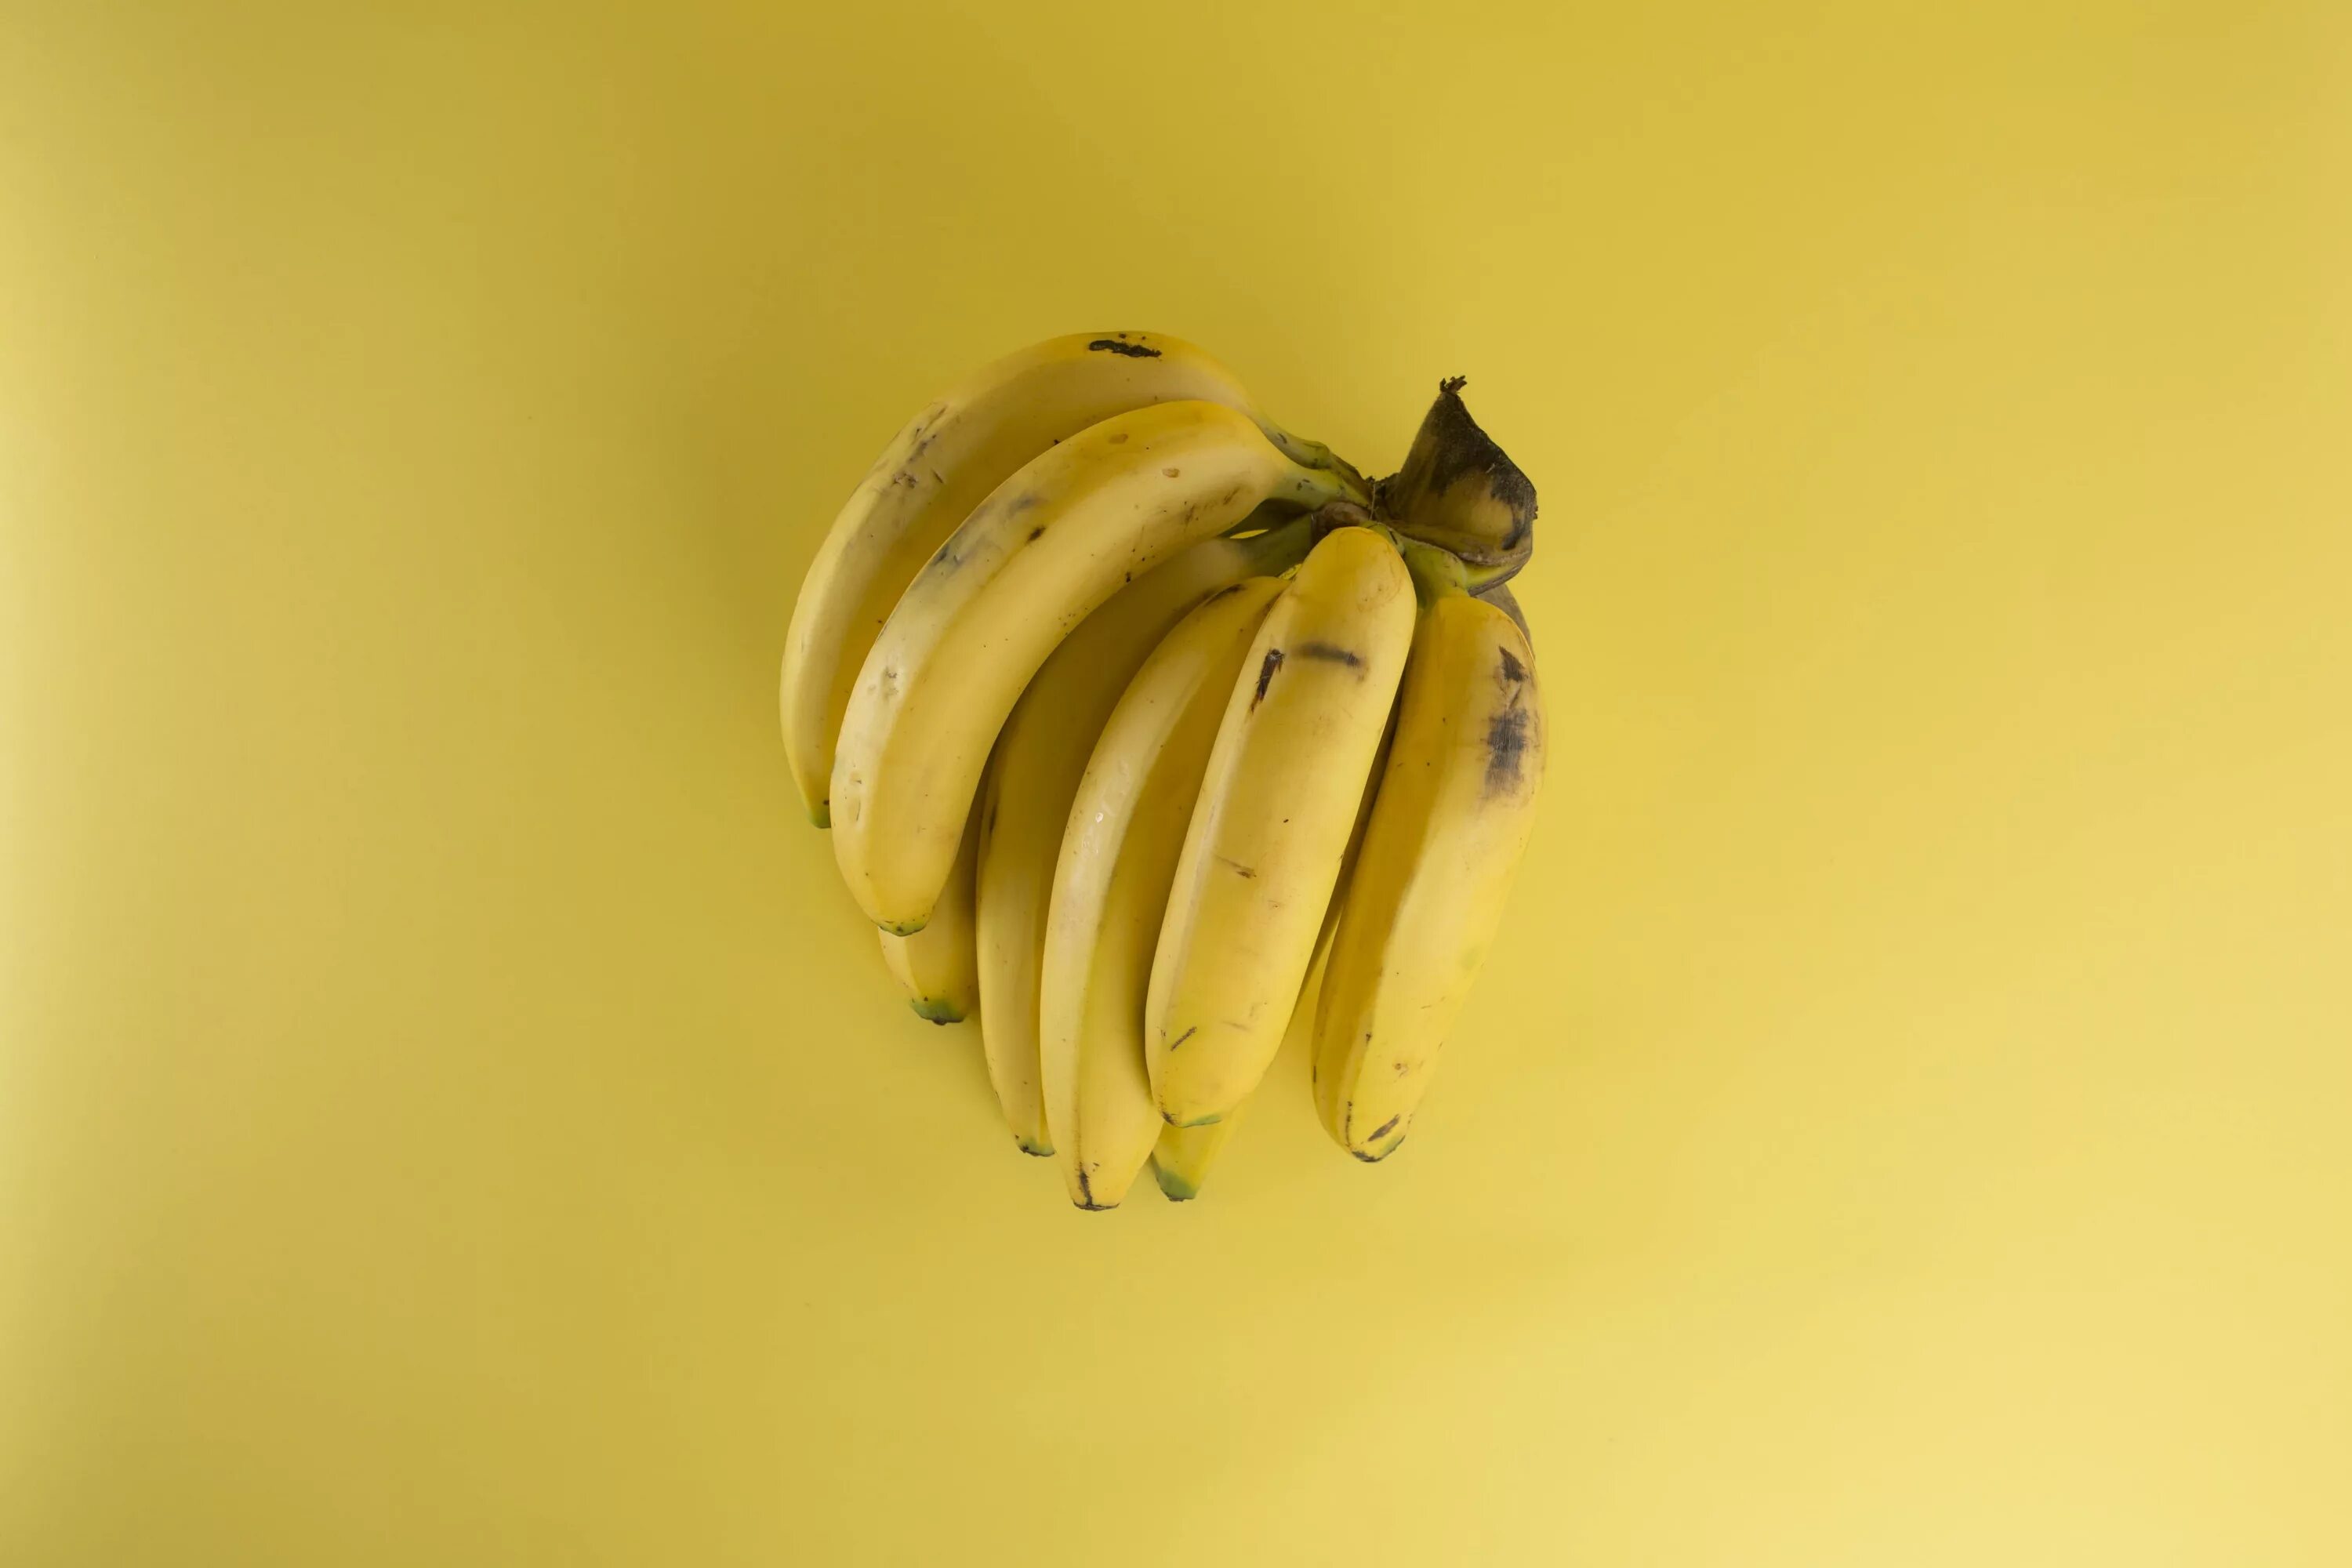 Muz v. Спелый банан. Красивый банан. Желтый банан. Макросъемка банана.